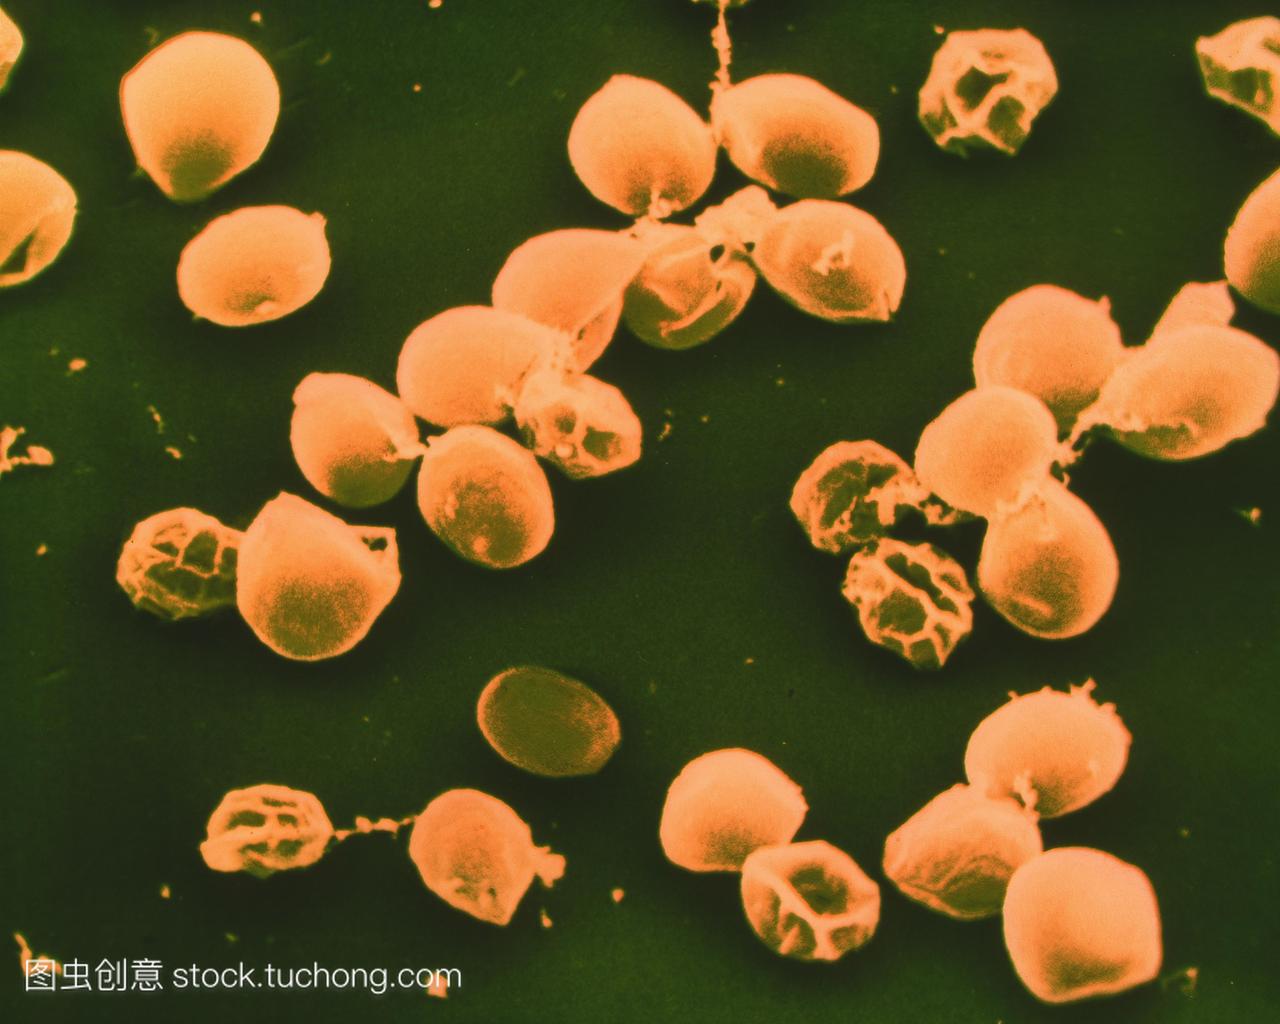 种寄生虫感染性孢子体阶段引起人类严重腹泻条